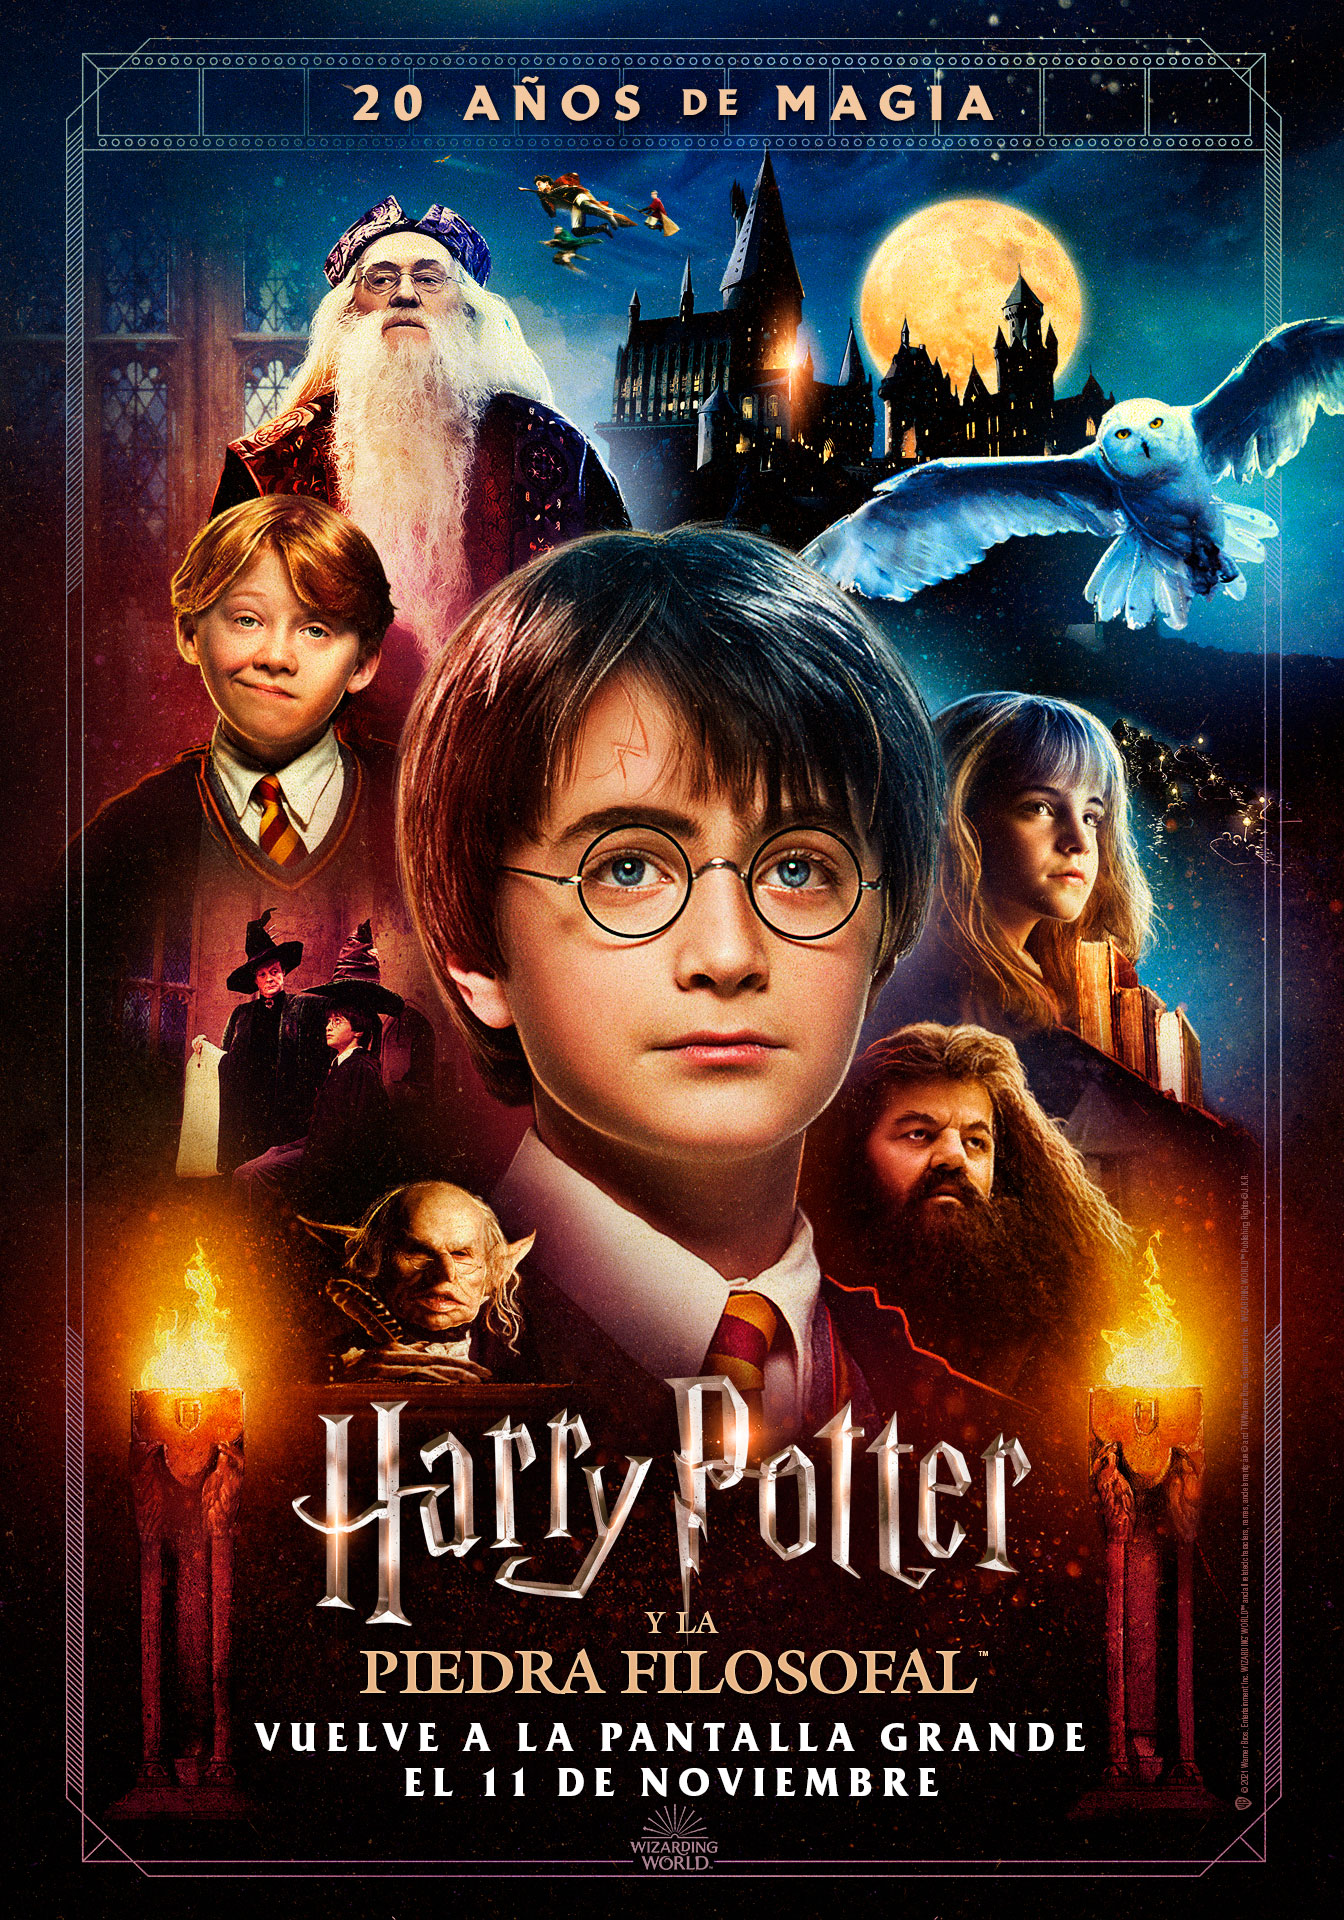  Warner Channel celebra los 20 años de Harry Potter